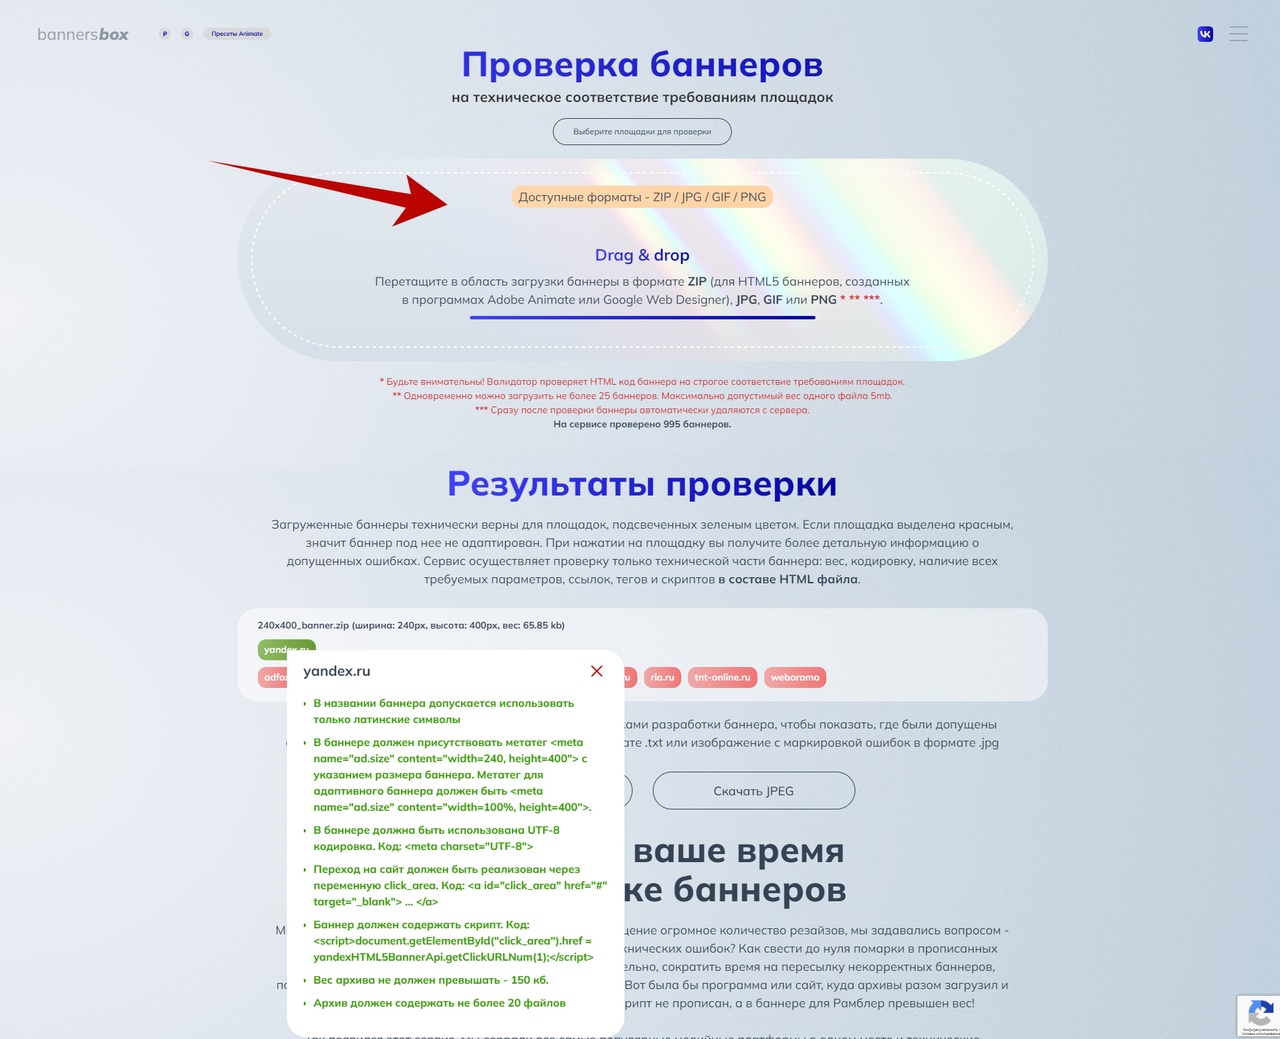 Как прописать баннер по ТТ Yandex.ru